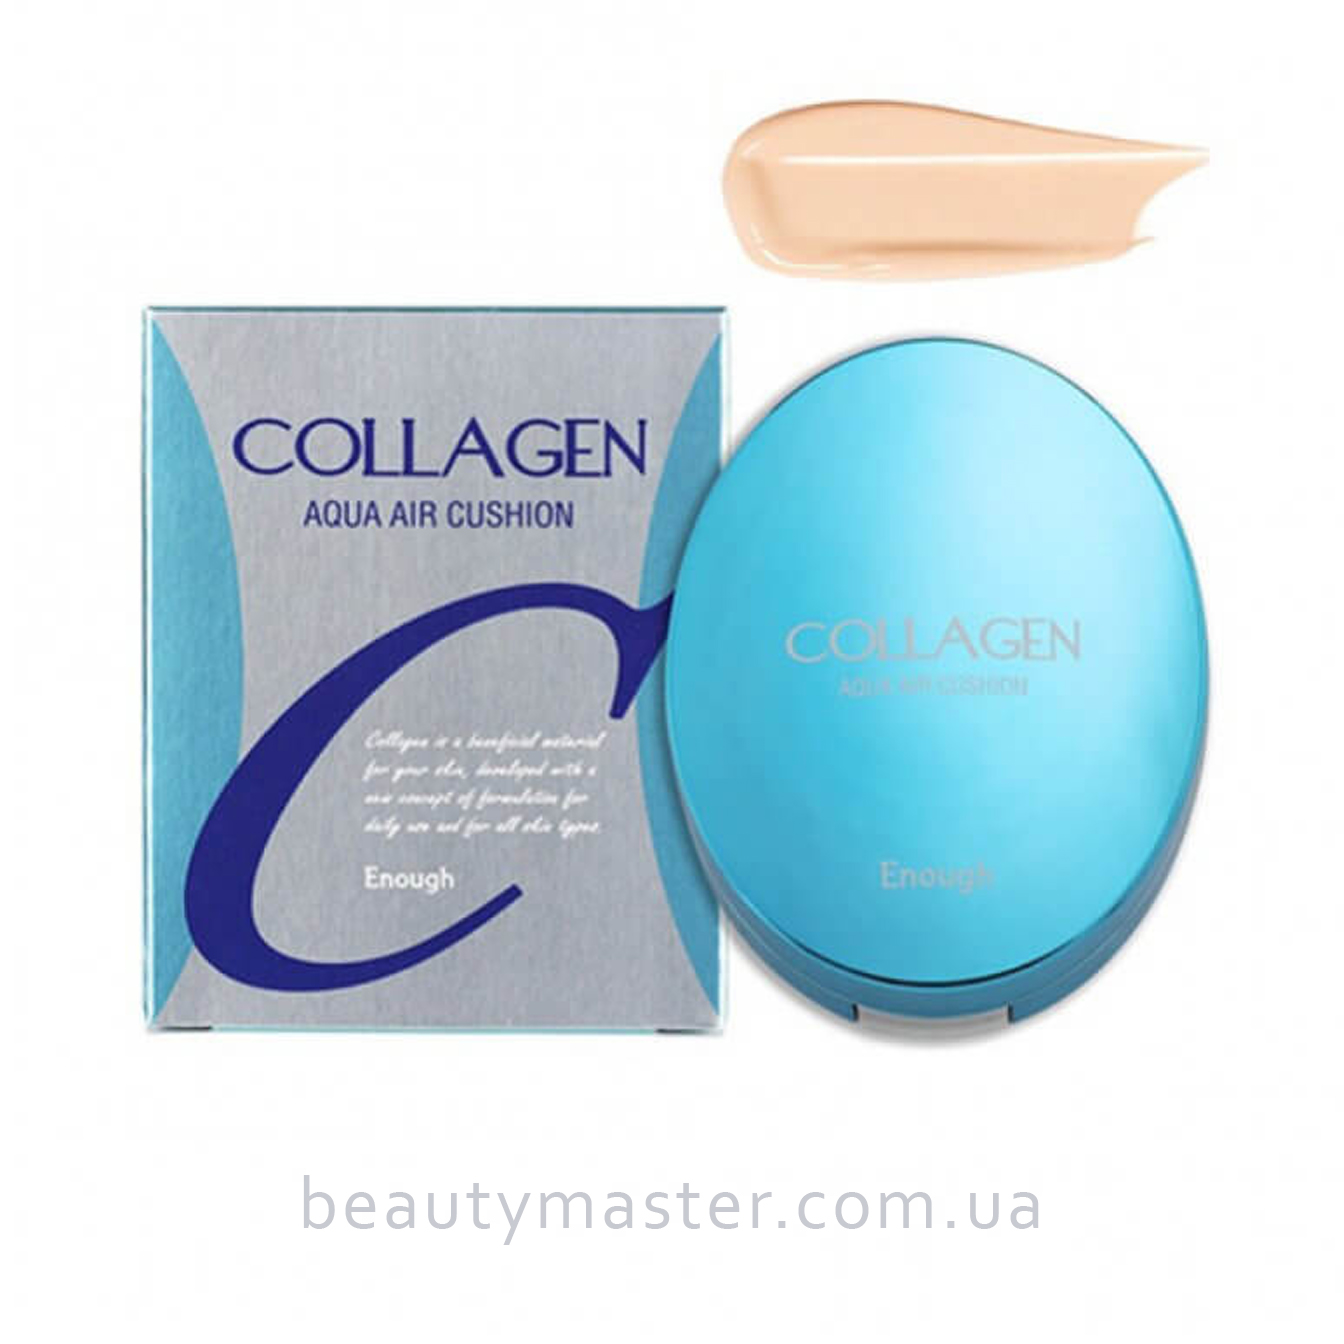 Collagen Кушон увлажняющий тон 13 Enough Collagen Aqua Air Cushion 15г Enough